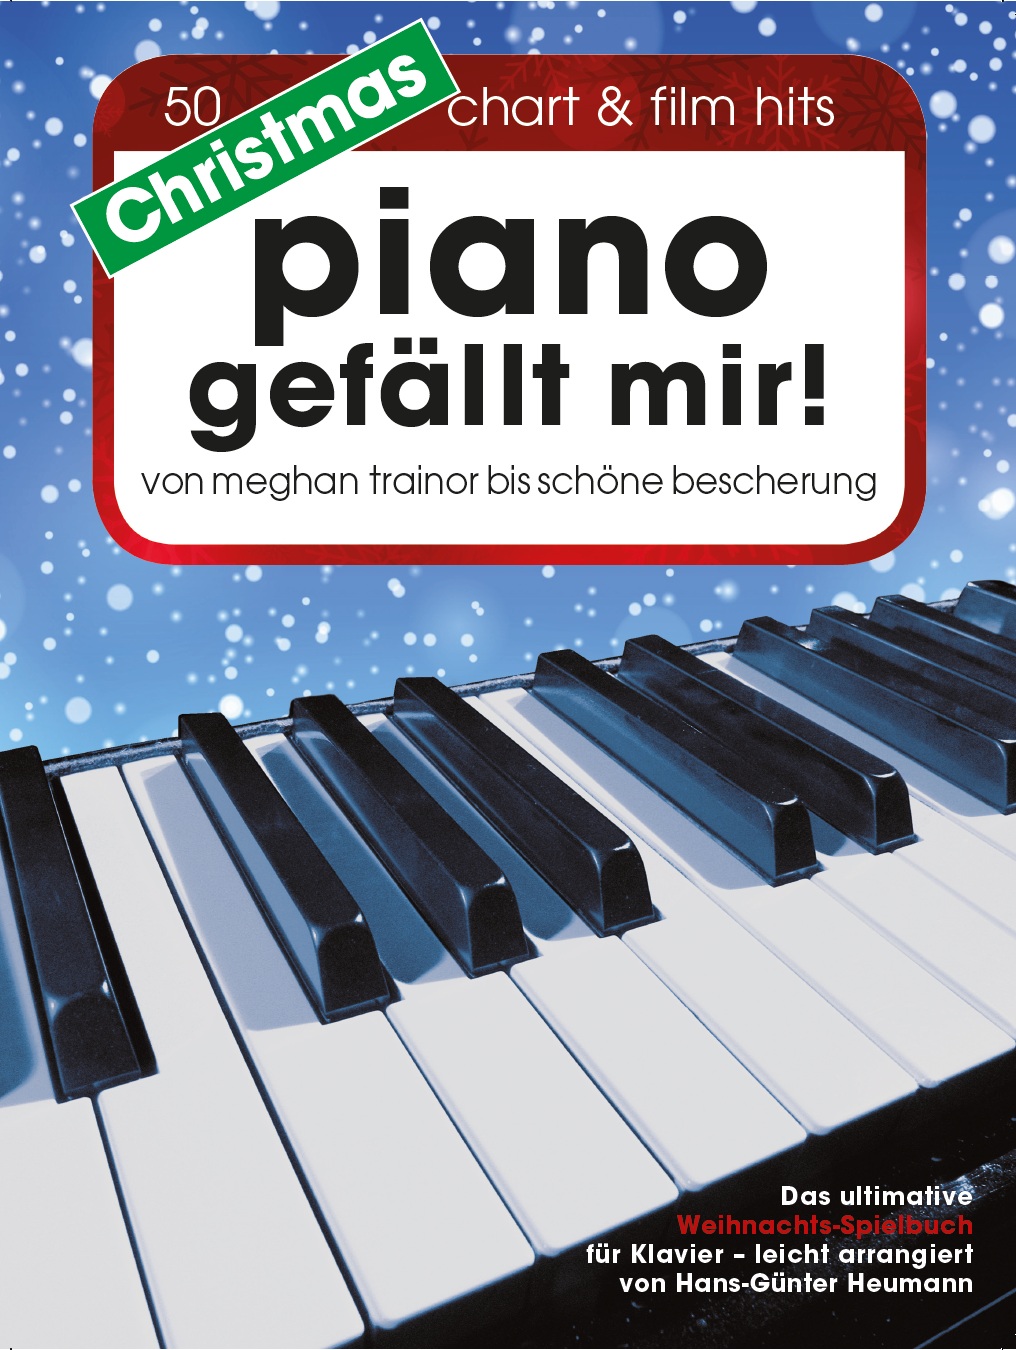 NEU Christmas Piano gefällt mir! Hans-Günter Heumann 438805 - Picture 1 of 1